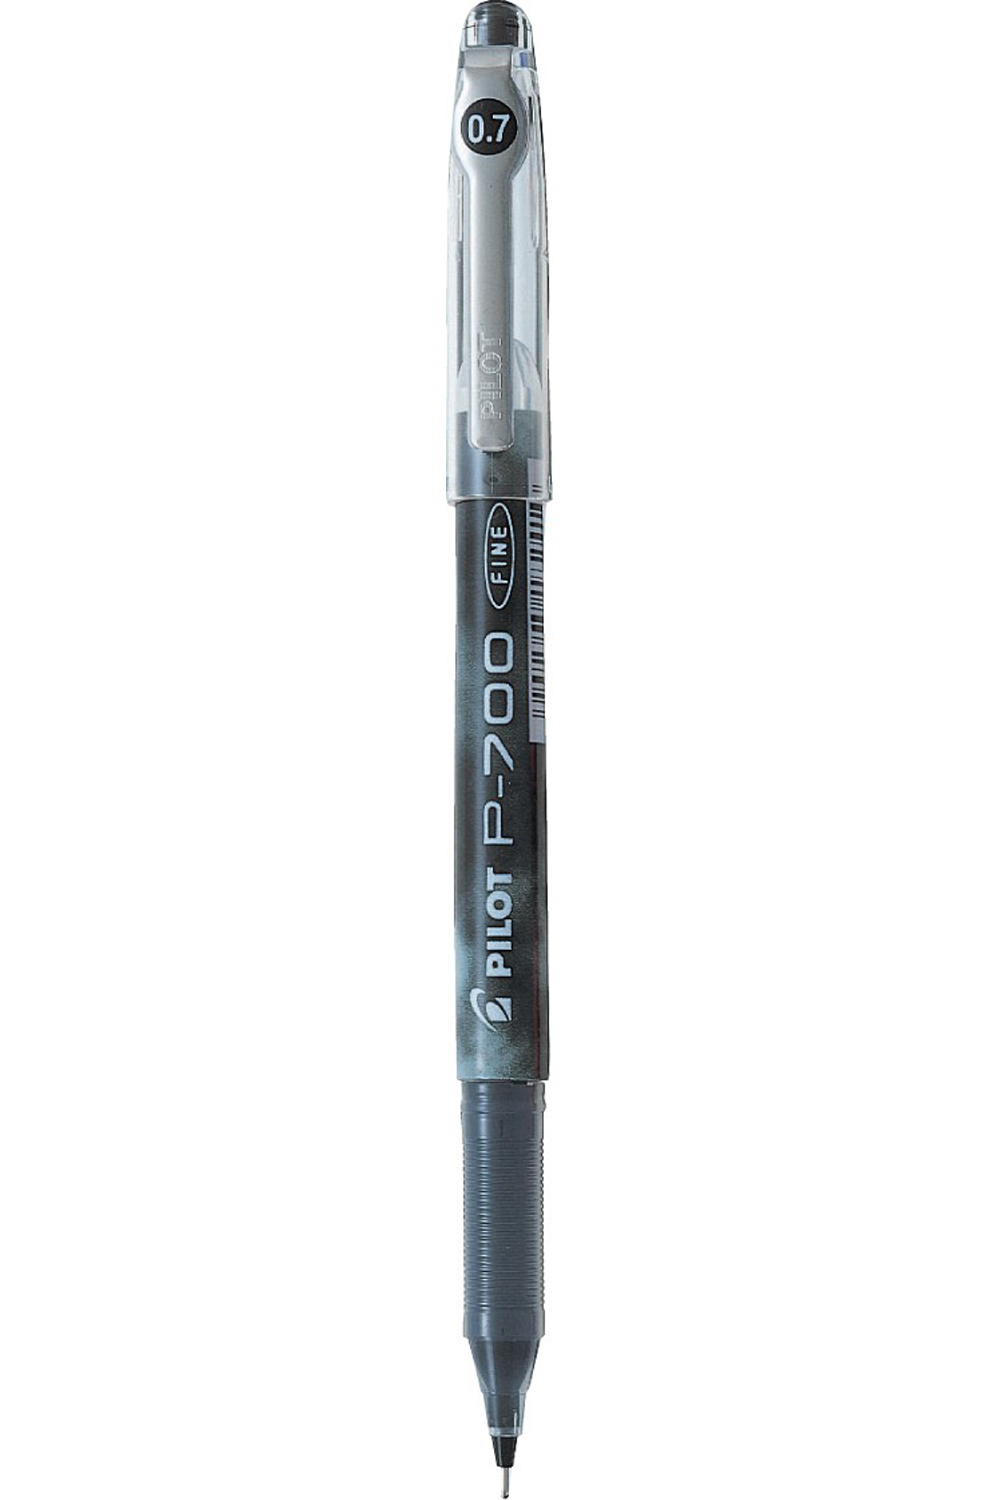 Uniball Signo 307 Retractable Rollerball Gel Pen Black | Eve